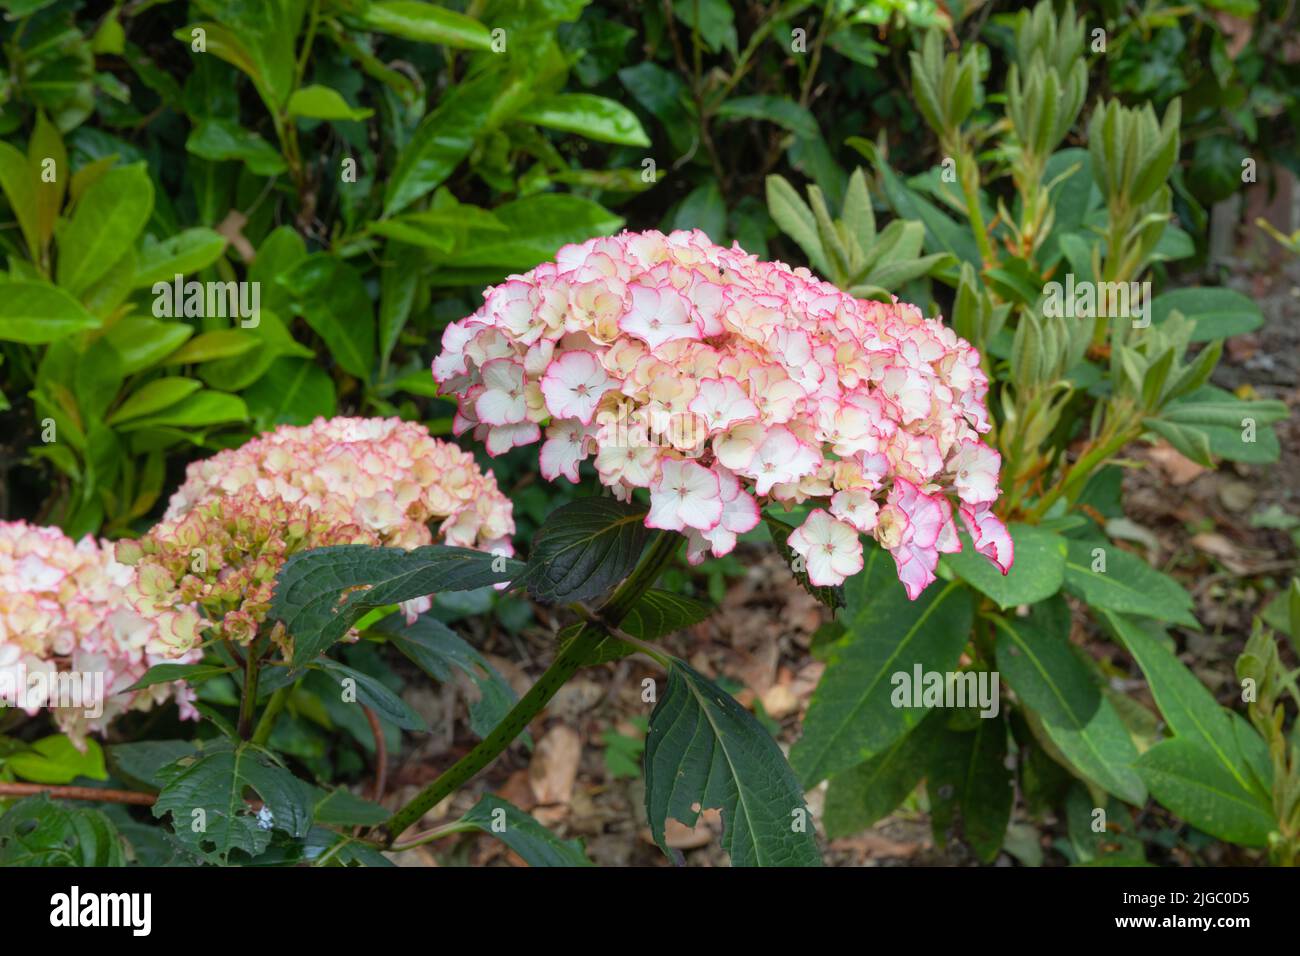 Flores rosadas y blancas de la hortensia de lacecap selina, un arbusto deciduo resistente de la serie de las señoras holandesas Foto de stock